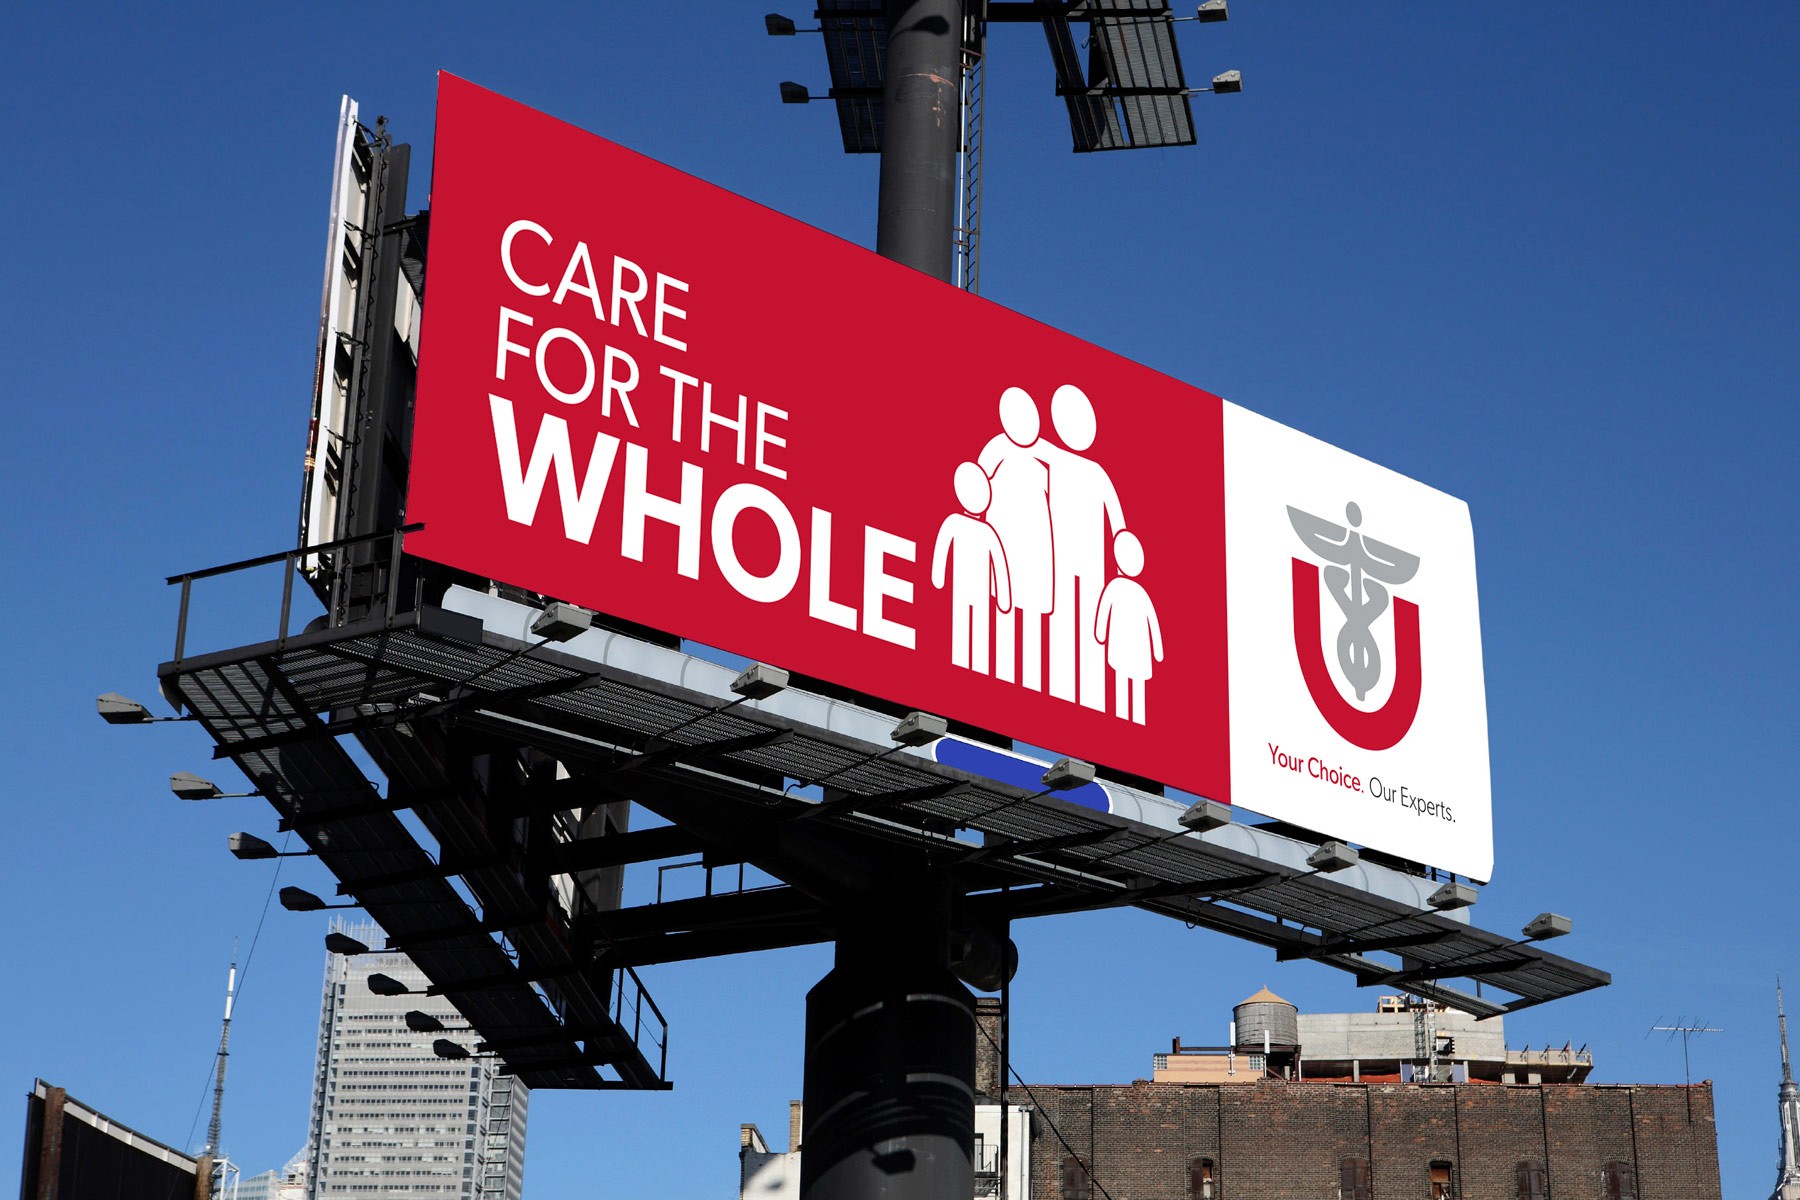 University of Utah Healthcare billobard photograph